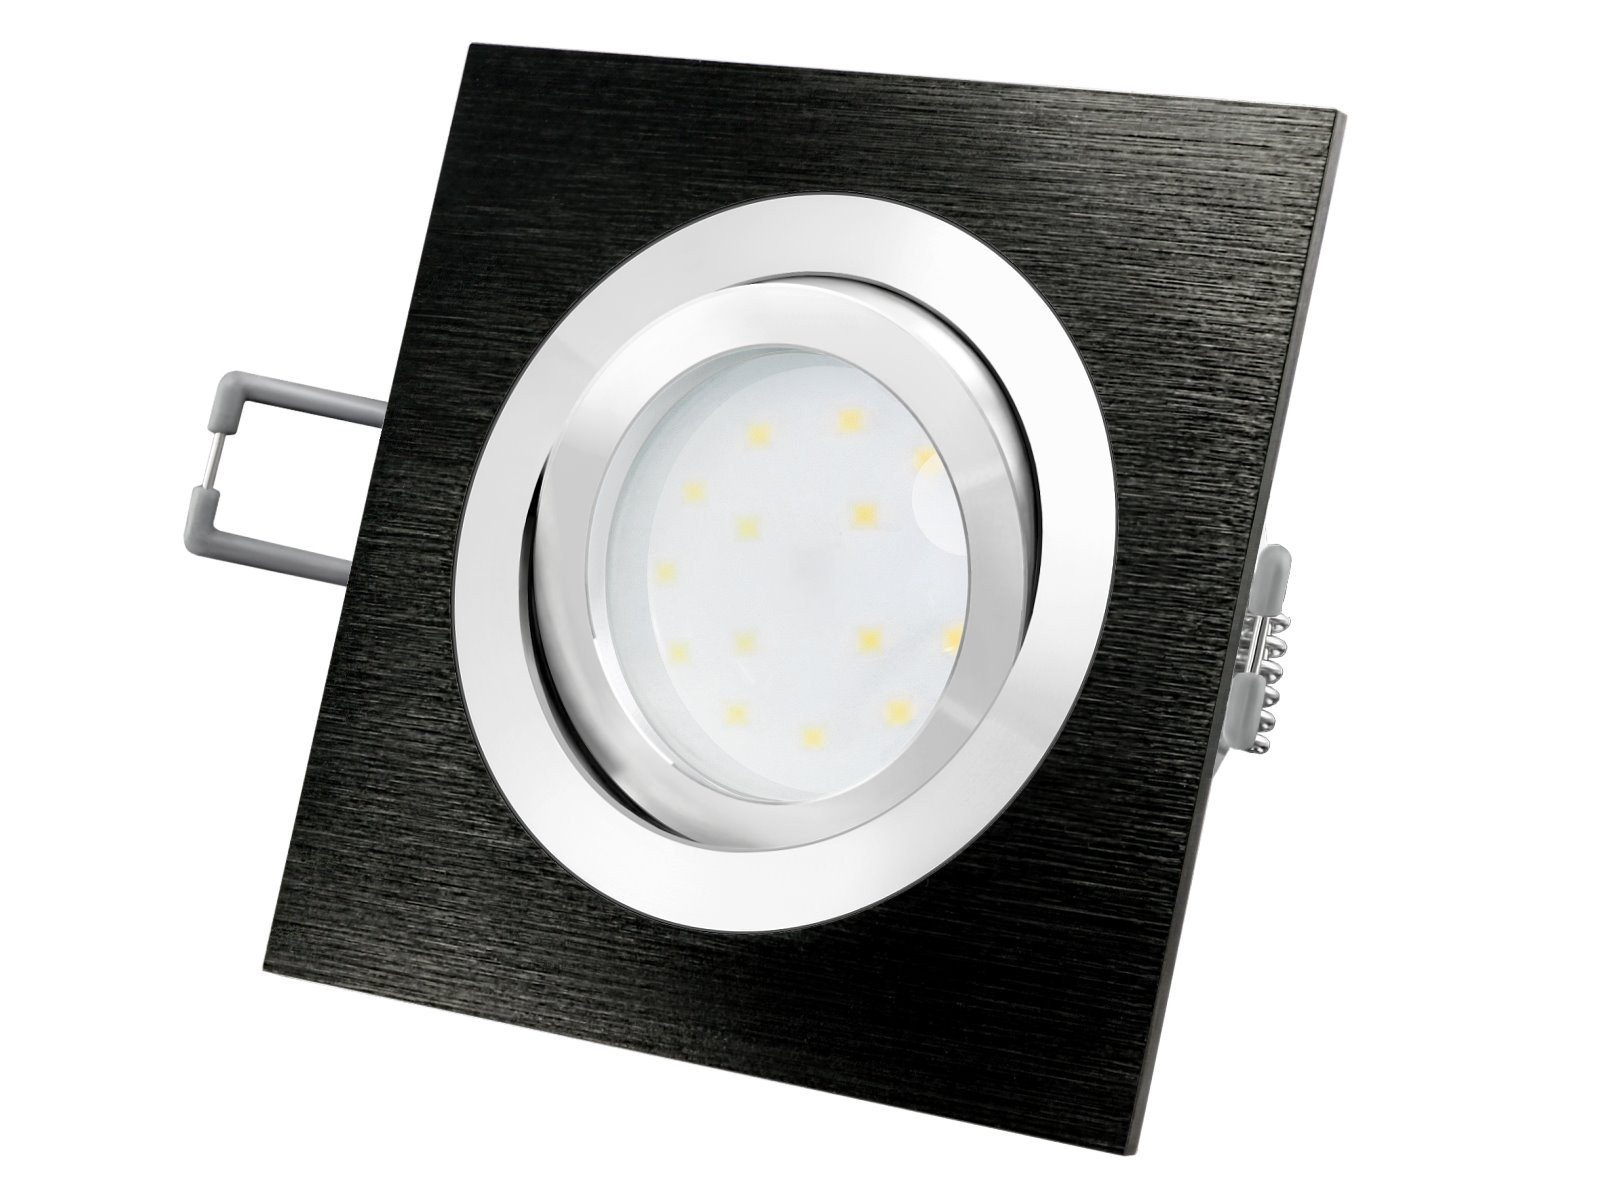 SSC-LUXon LED Einbaustrahler QF-2 LED-Einbauleuchte Alu schwarz schwenkbar flach mit LED-Modul, Warmweiß